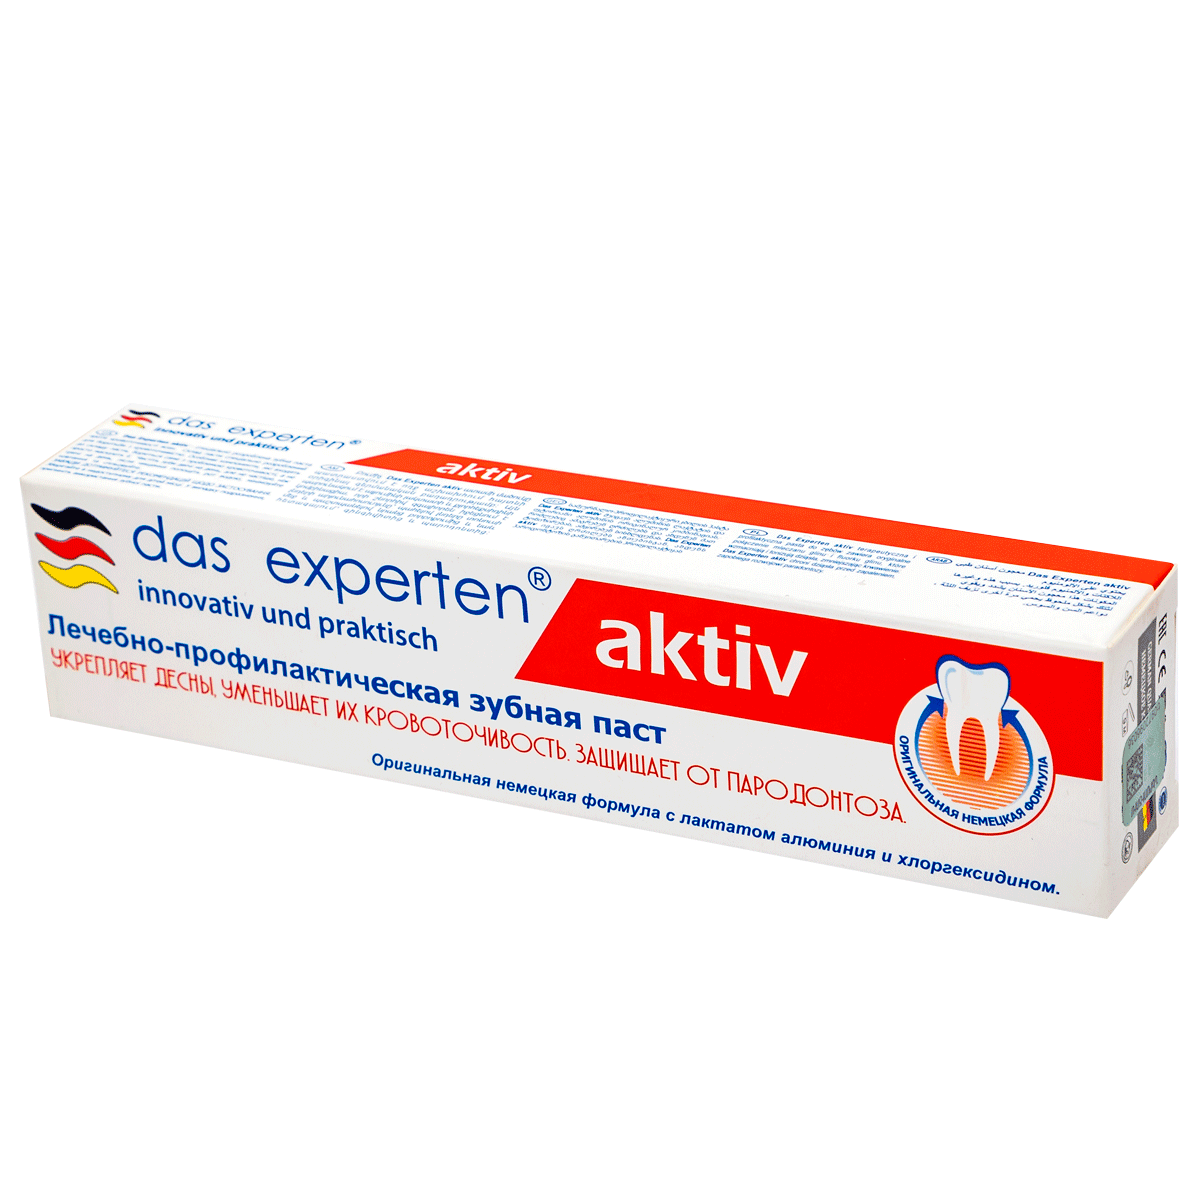 Ատամի մածուկ Das experten Aktiv  